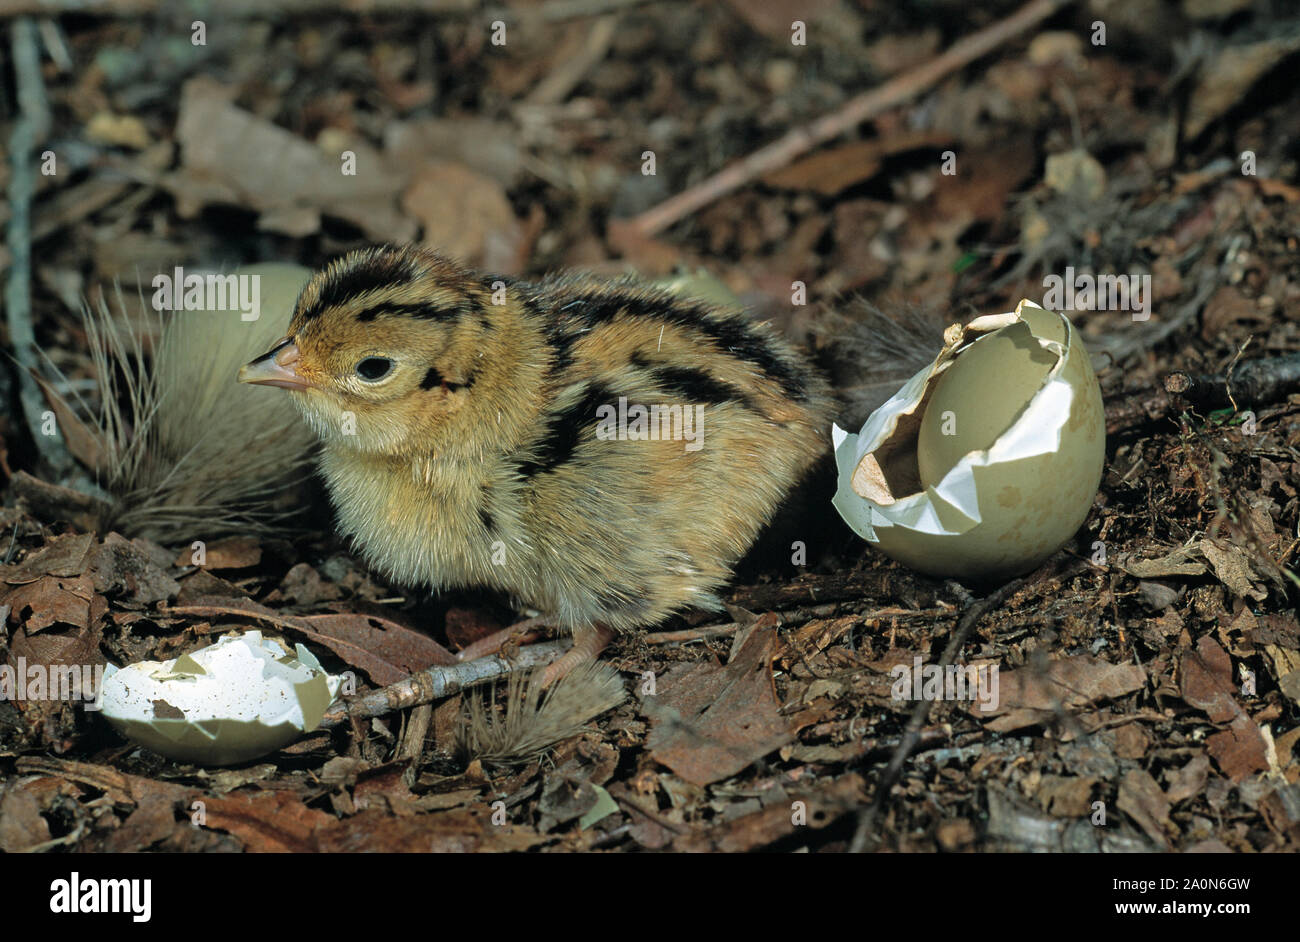 Fagiano giovane pulcino. (Phasianus colchicus). Appena emerse da uovo. Esempio di nidifugous precocial o giovani in uccelli. Foto Stock